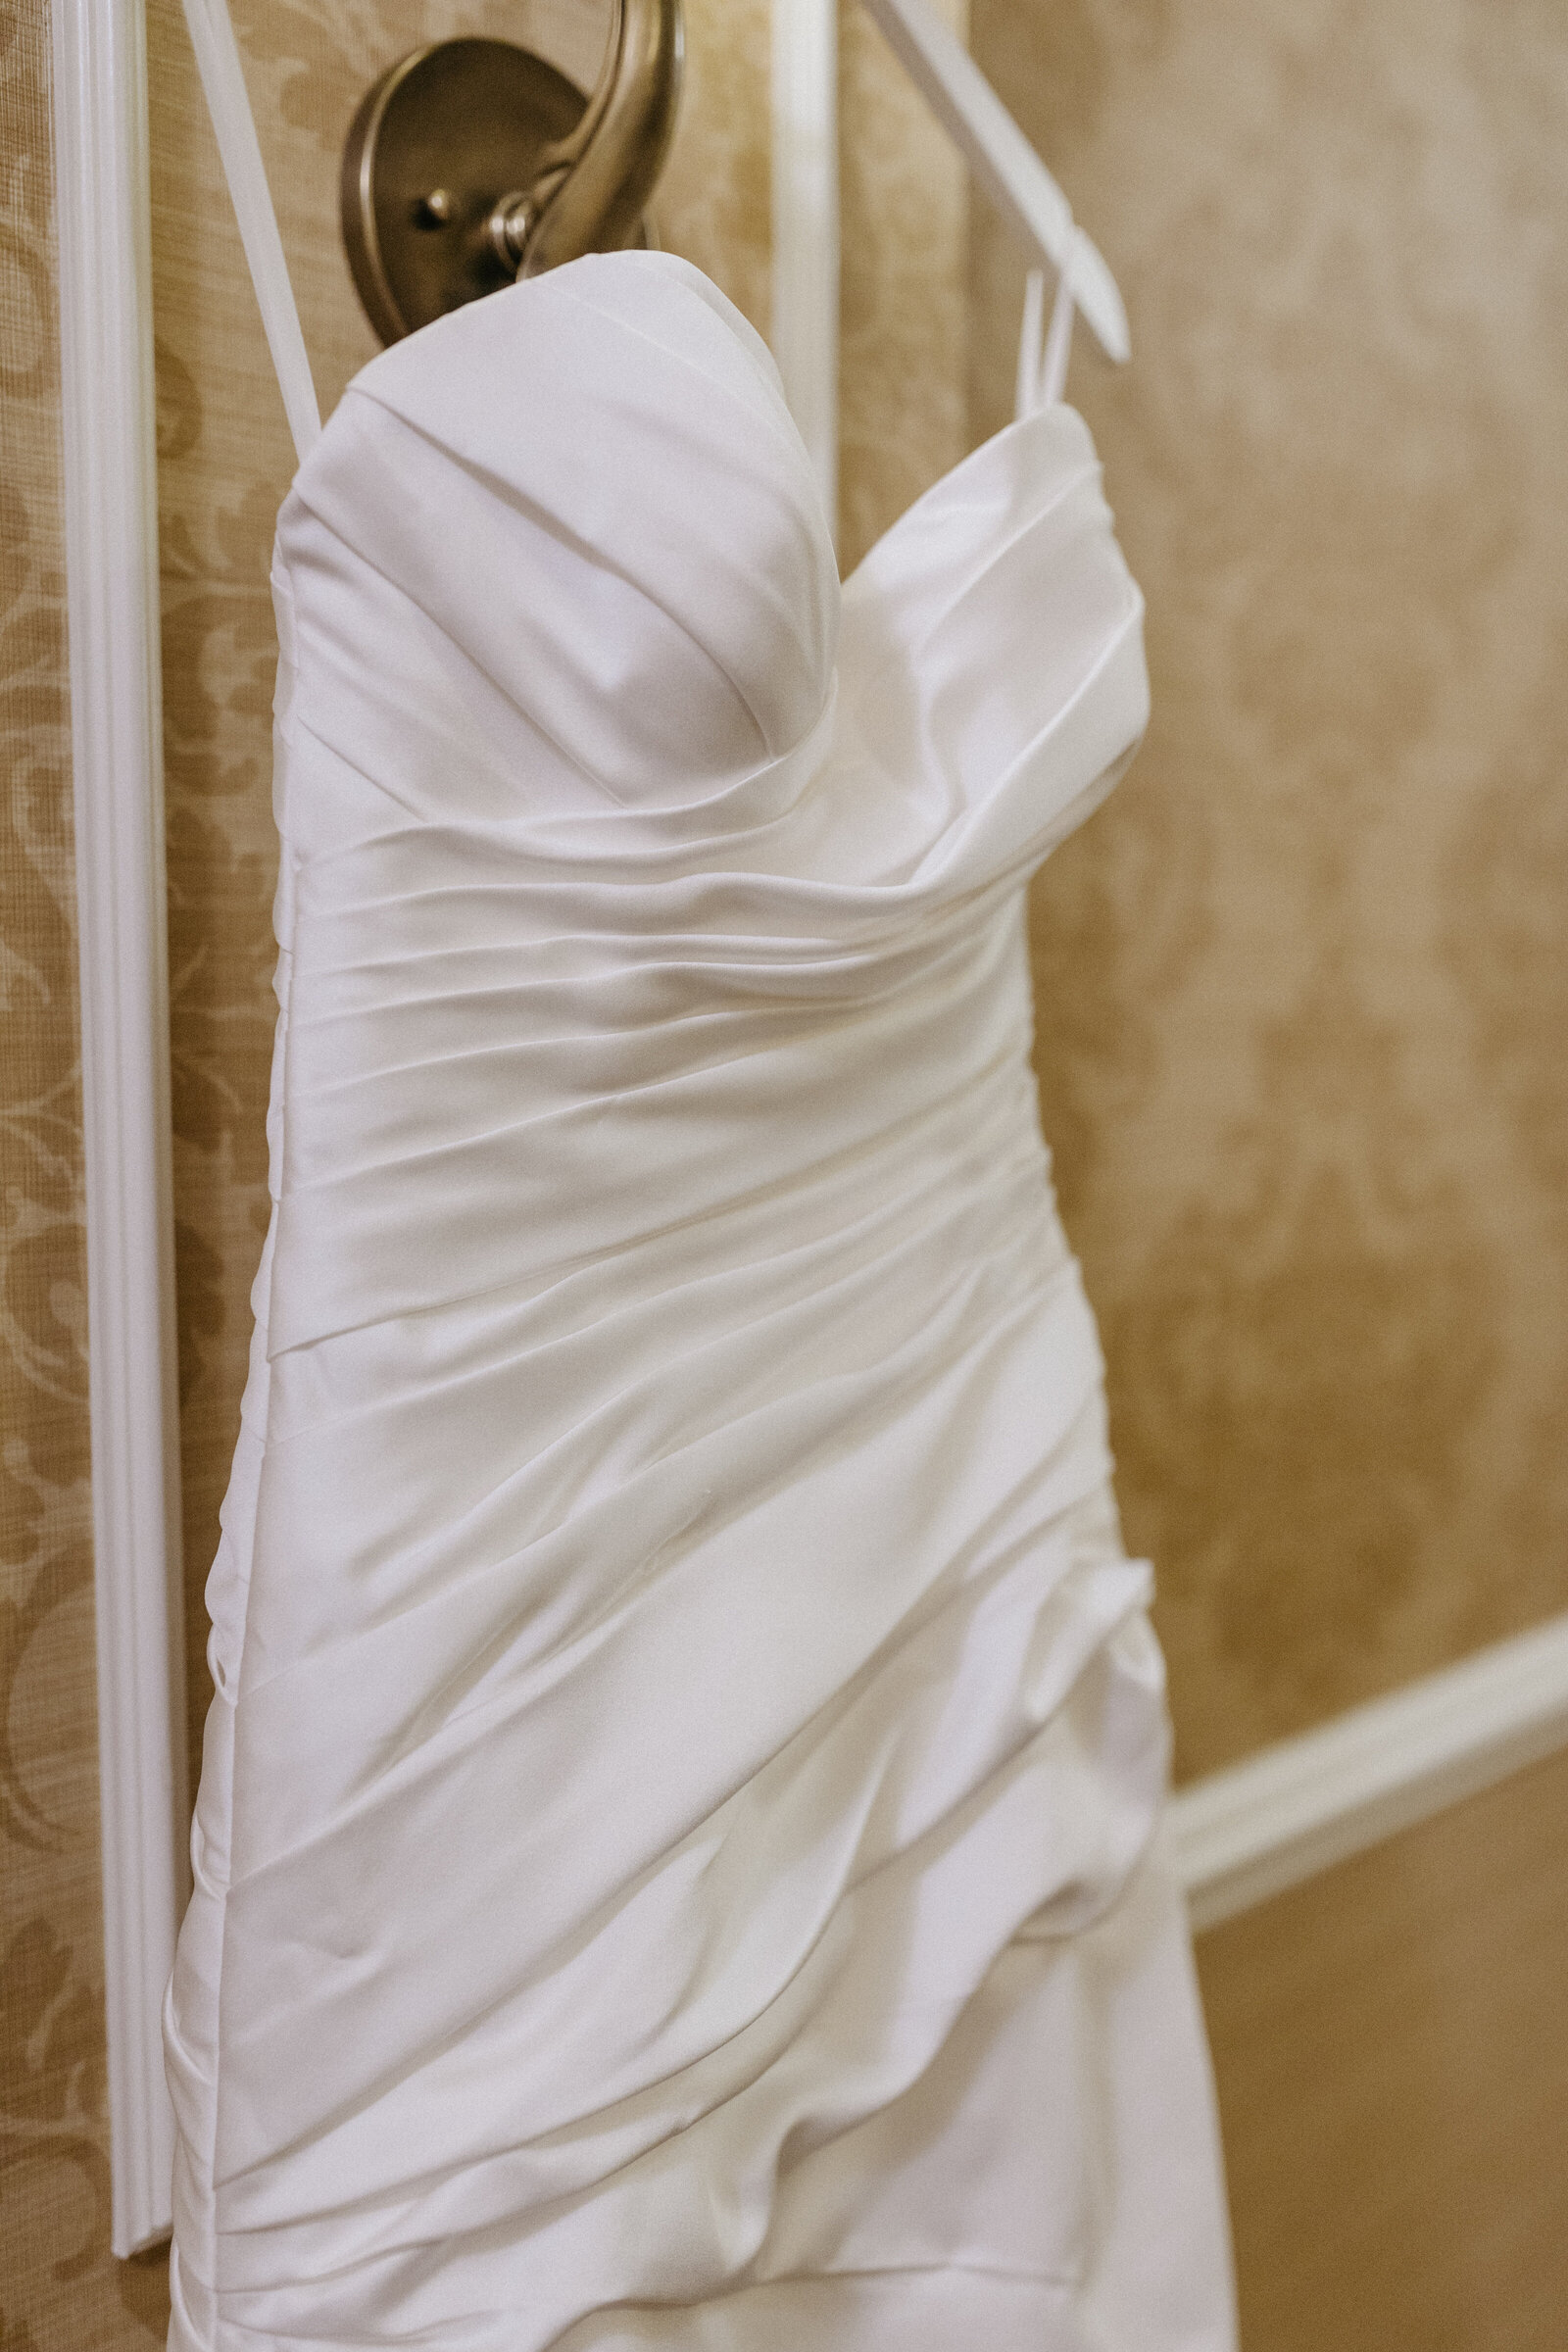 A wedding dress hangs on a light fixture on a hotel hallway